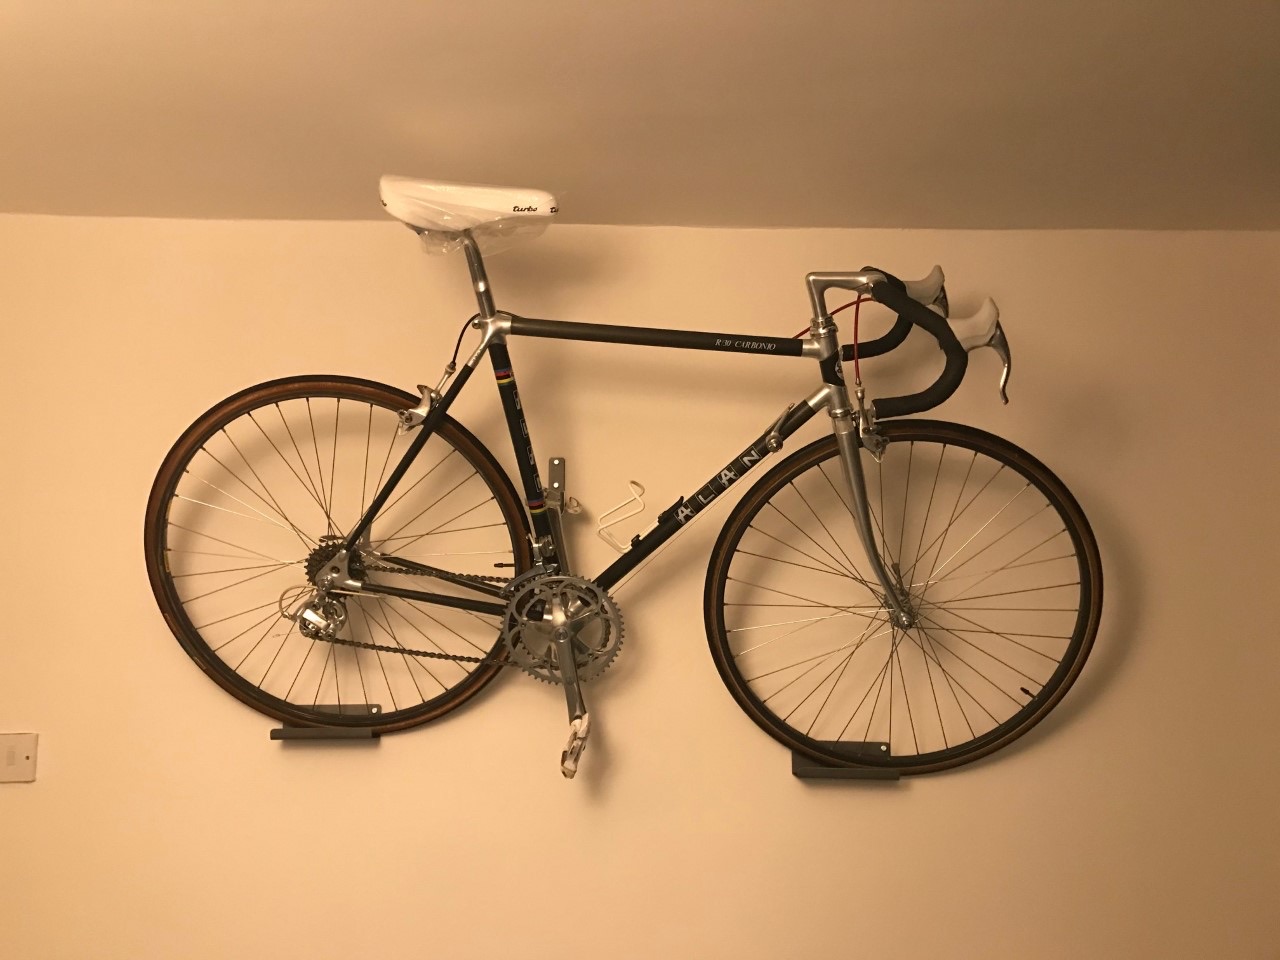 Image of vintage Alan bike on wall